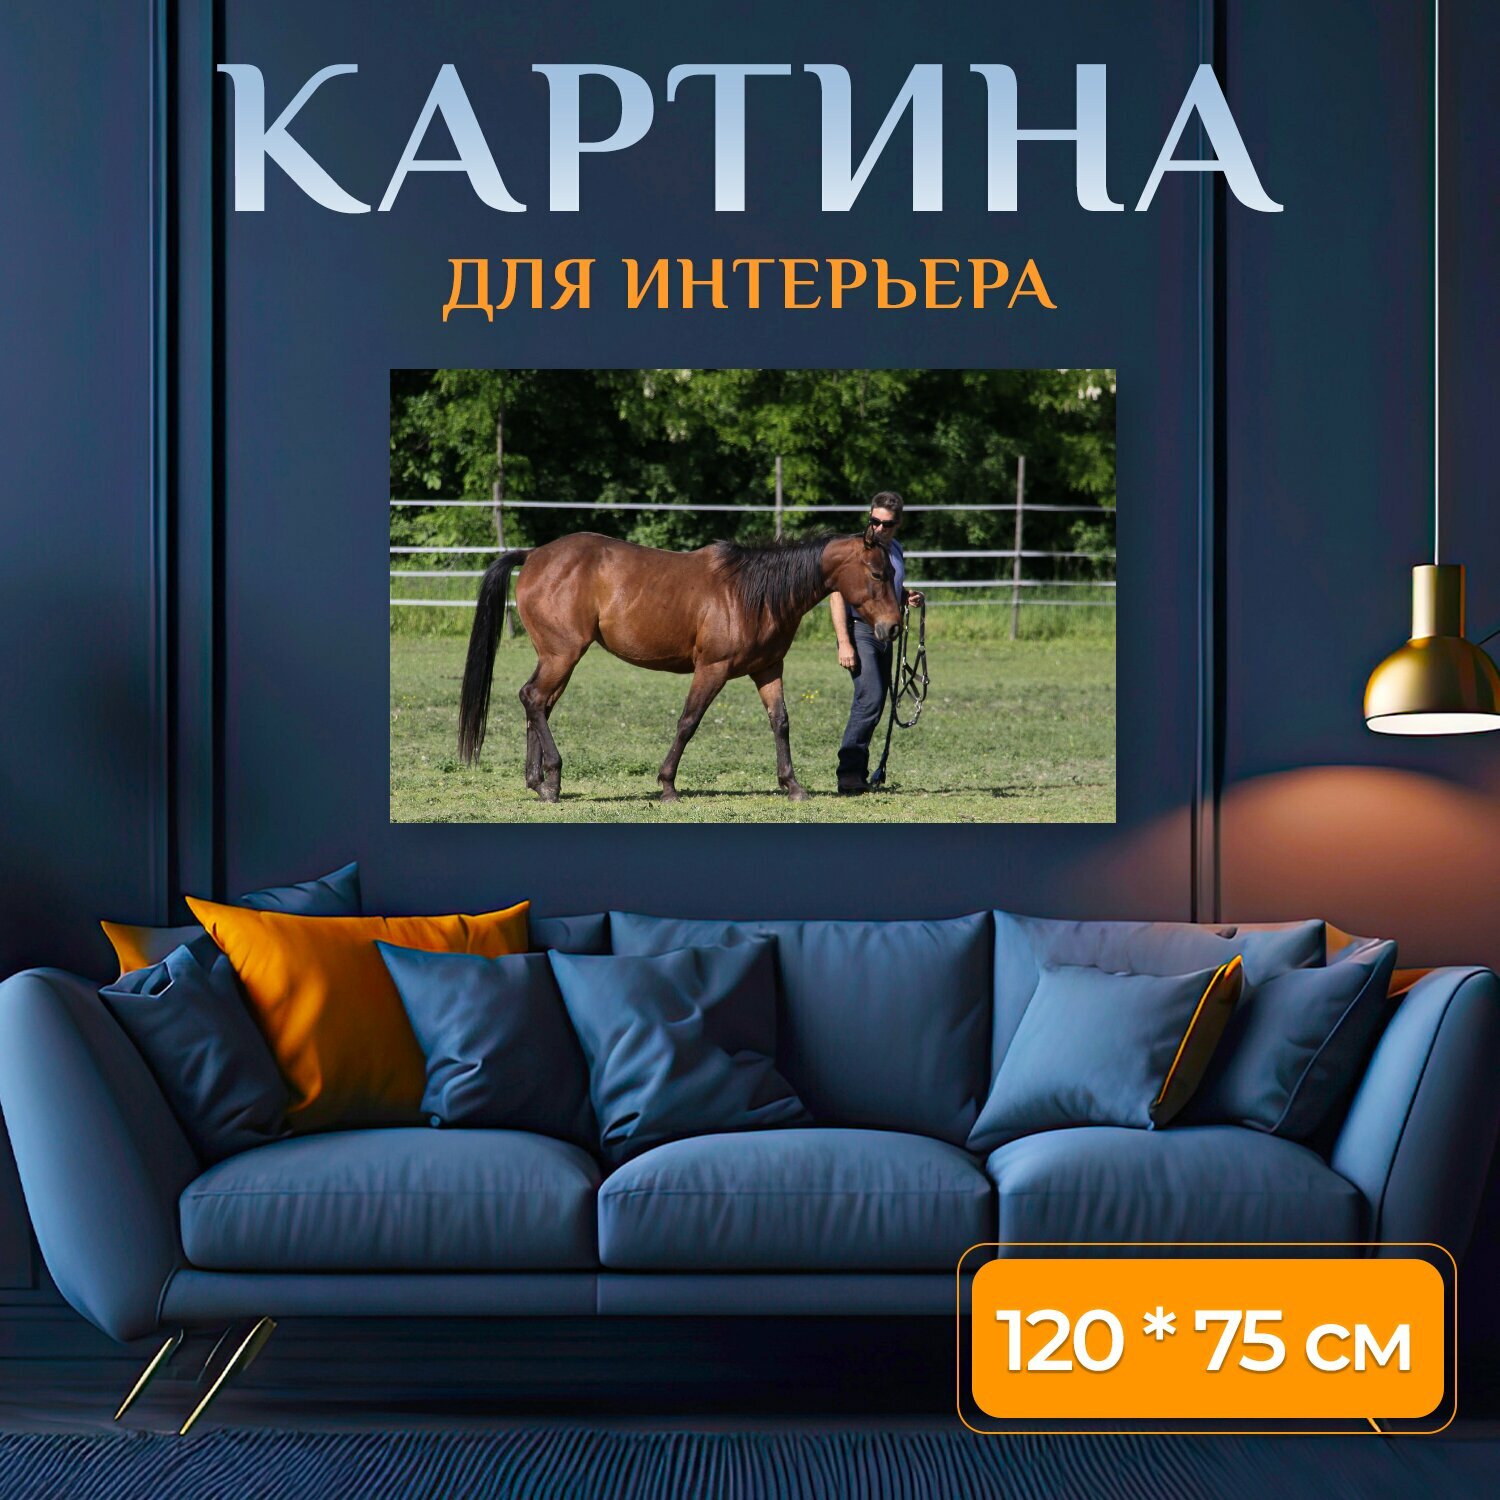 Картина на холсте "Лошадь, выездка, животные" на подрамнике 120х75 см. для интерьера